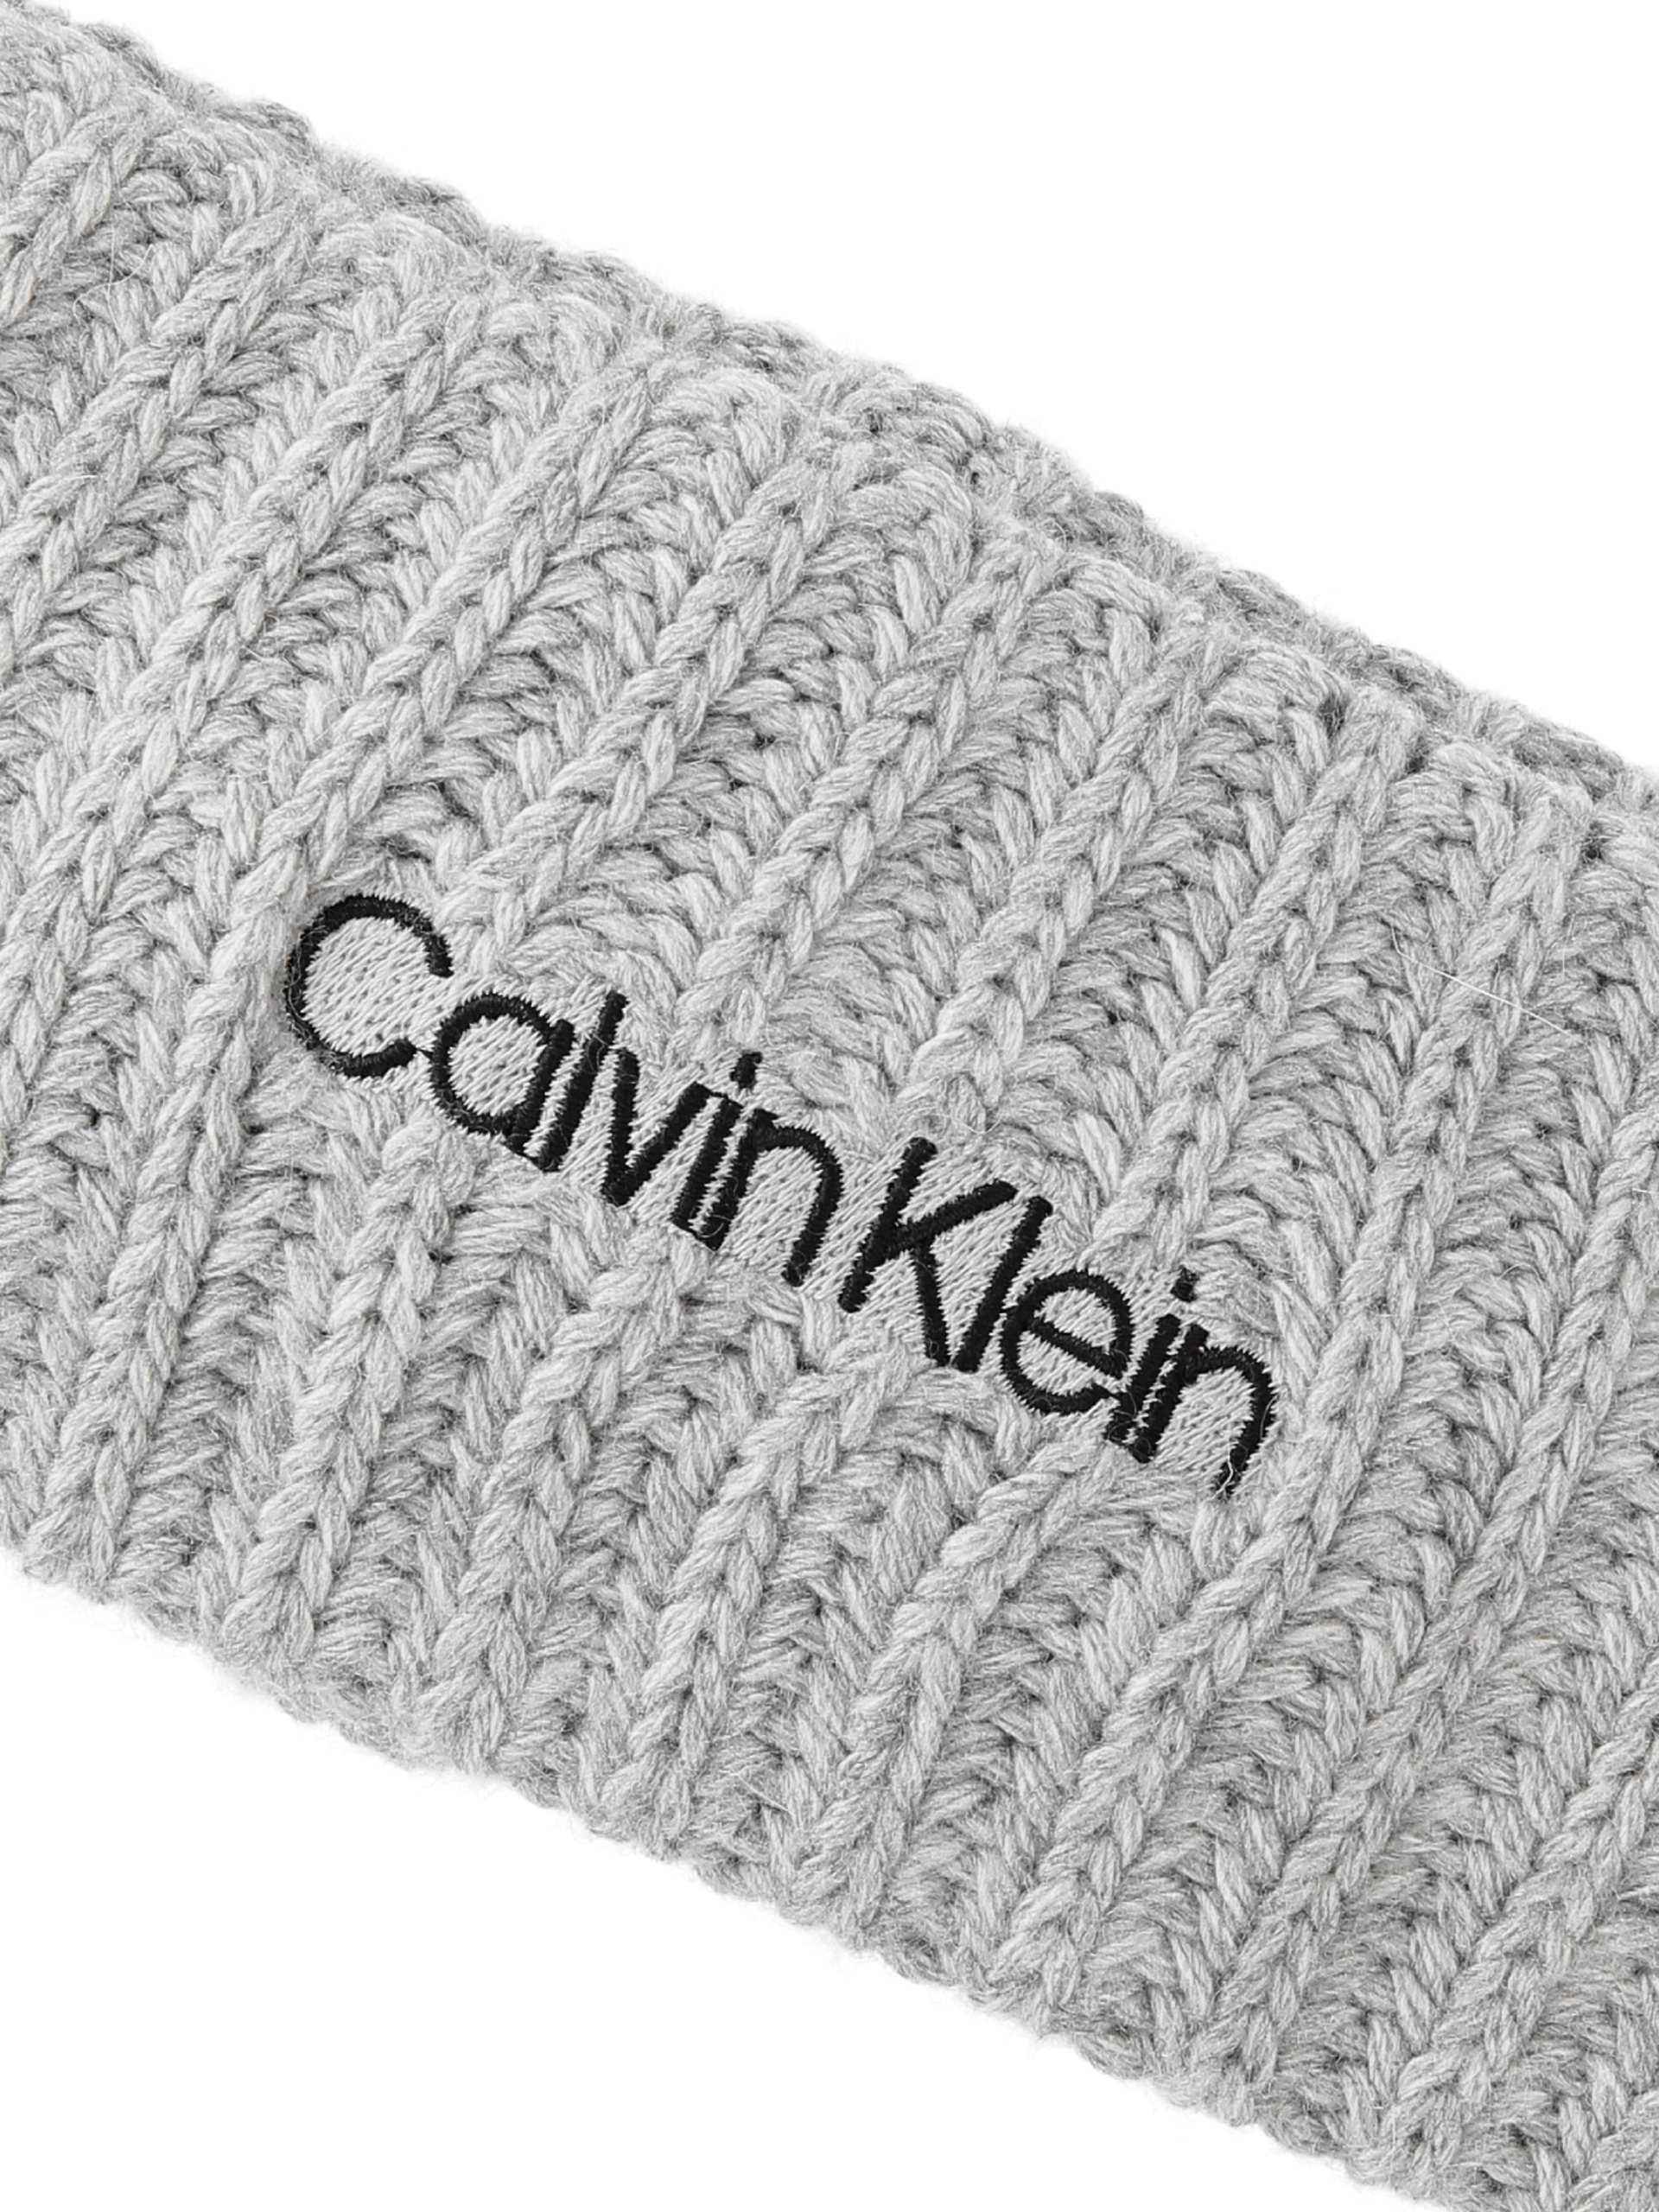 Calvin Klein dámská šedá čelenka - OS (0IN)